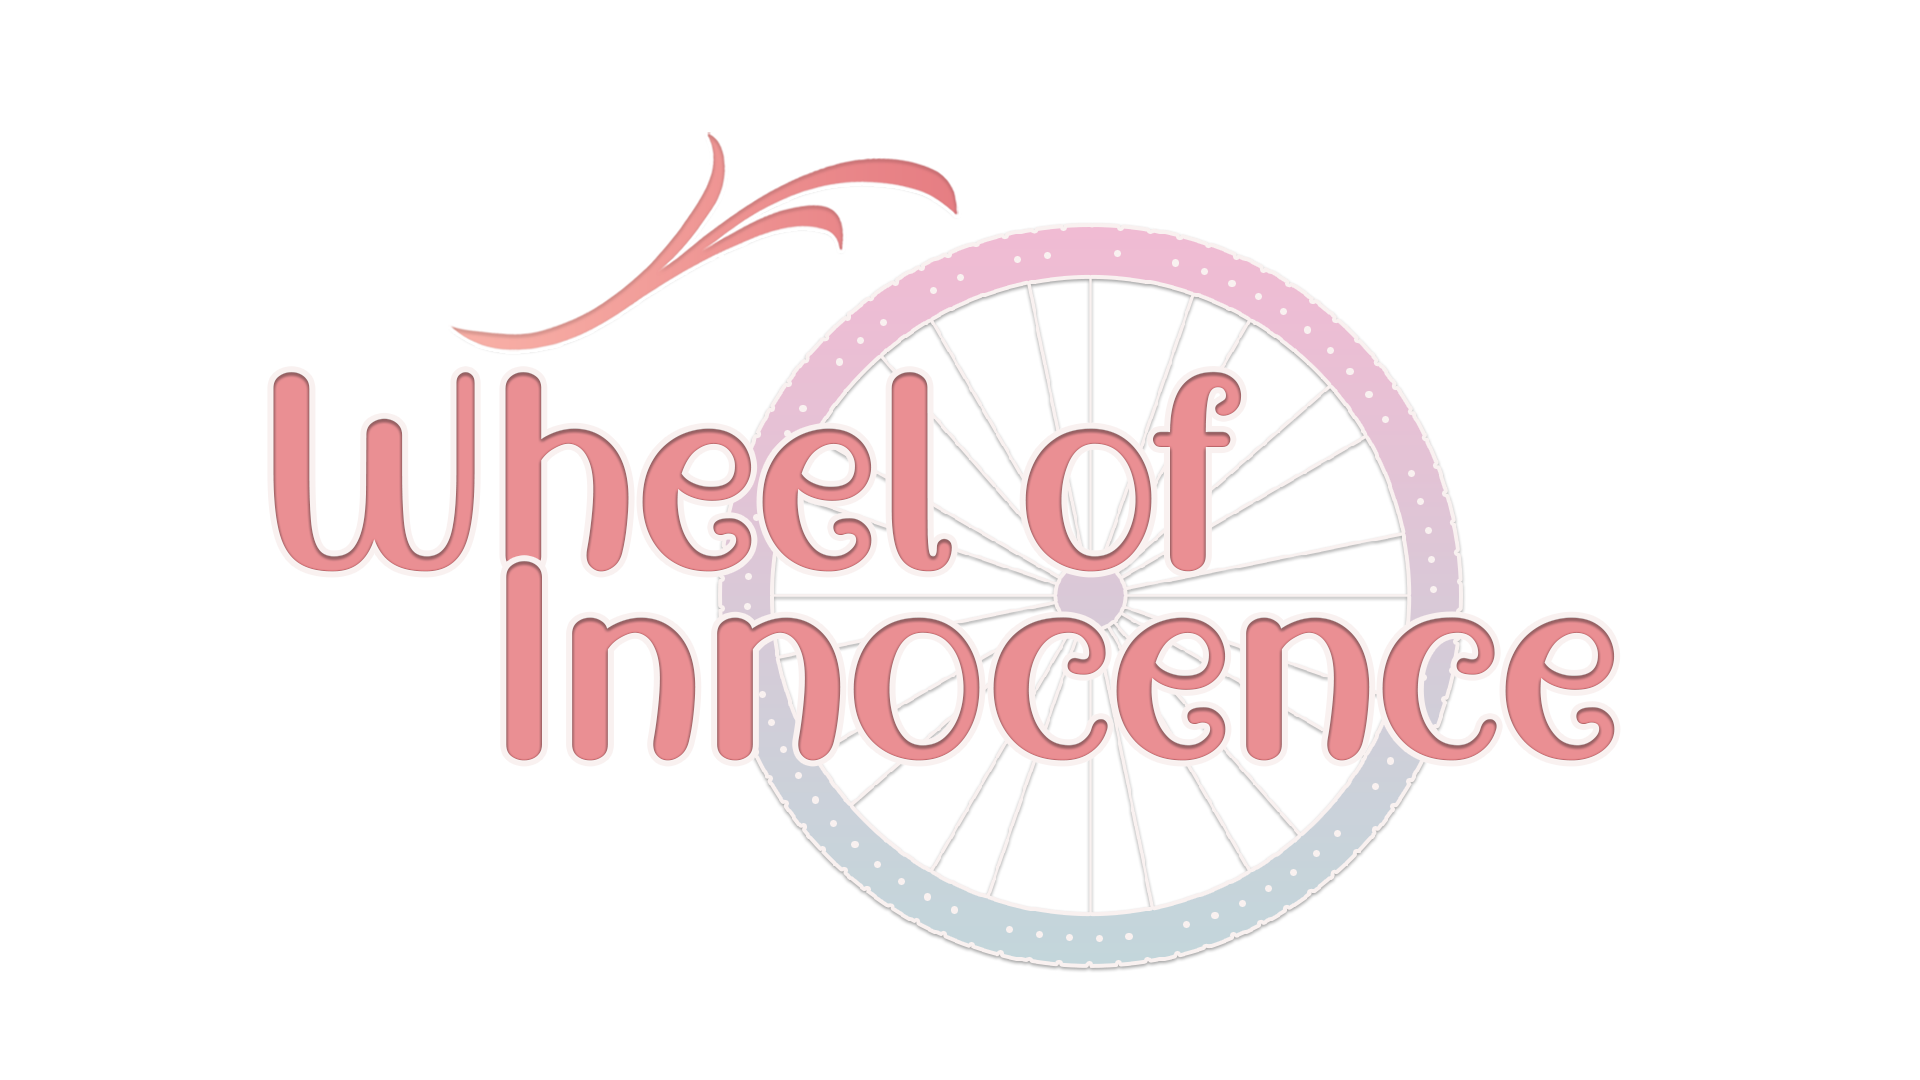 Wheel of Innocence